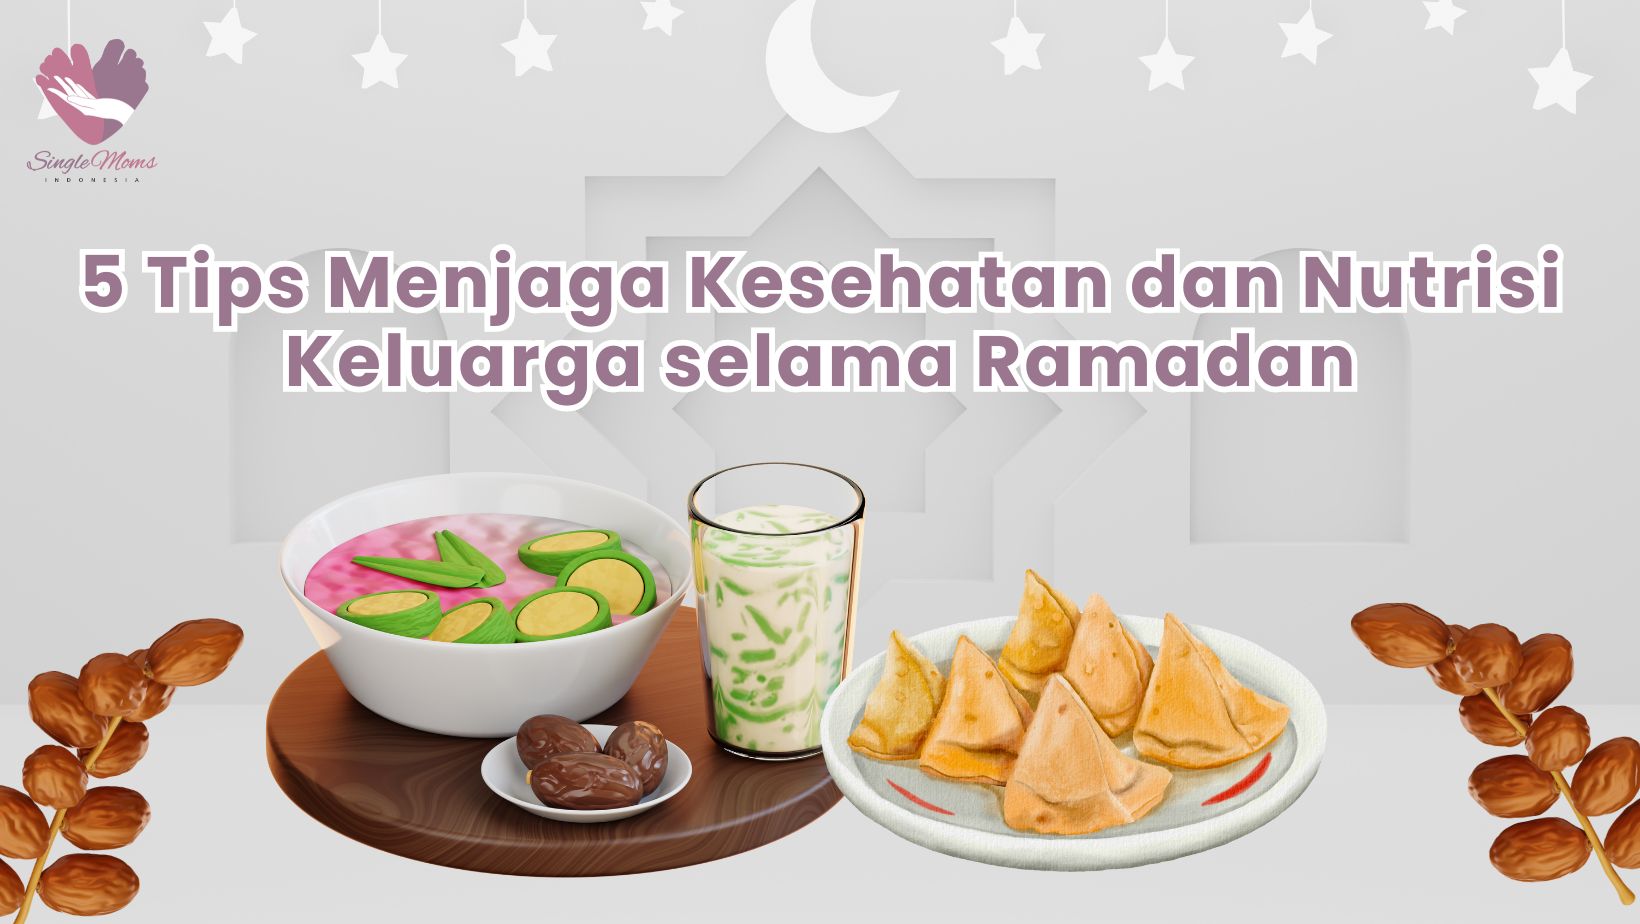 5 Tips Menjaga Kesehatan dan Nutrisi Keluarga selama Ramadan